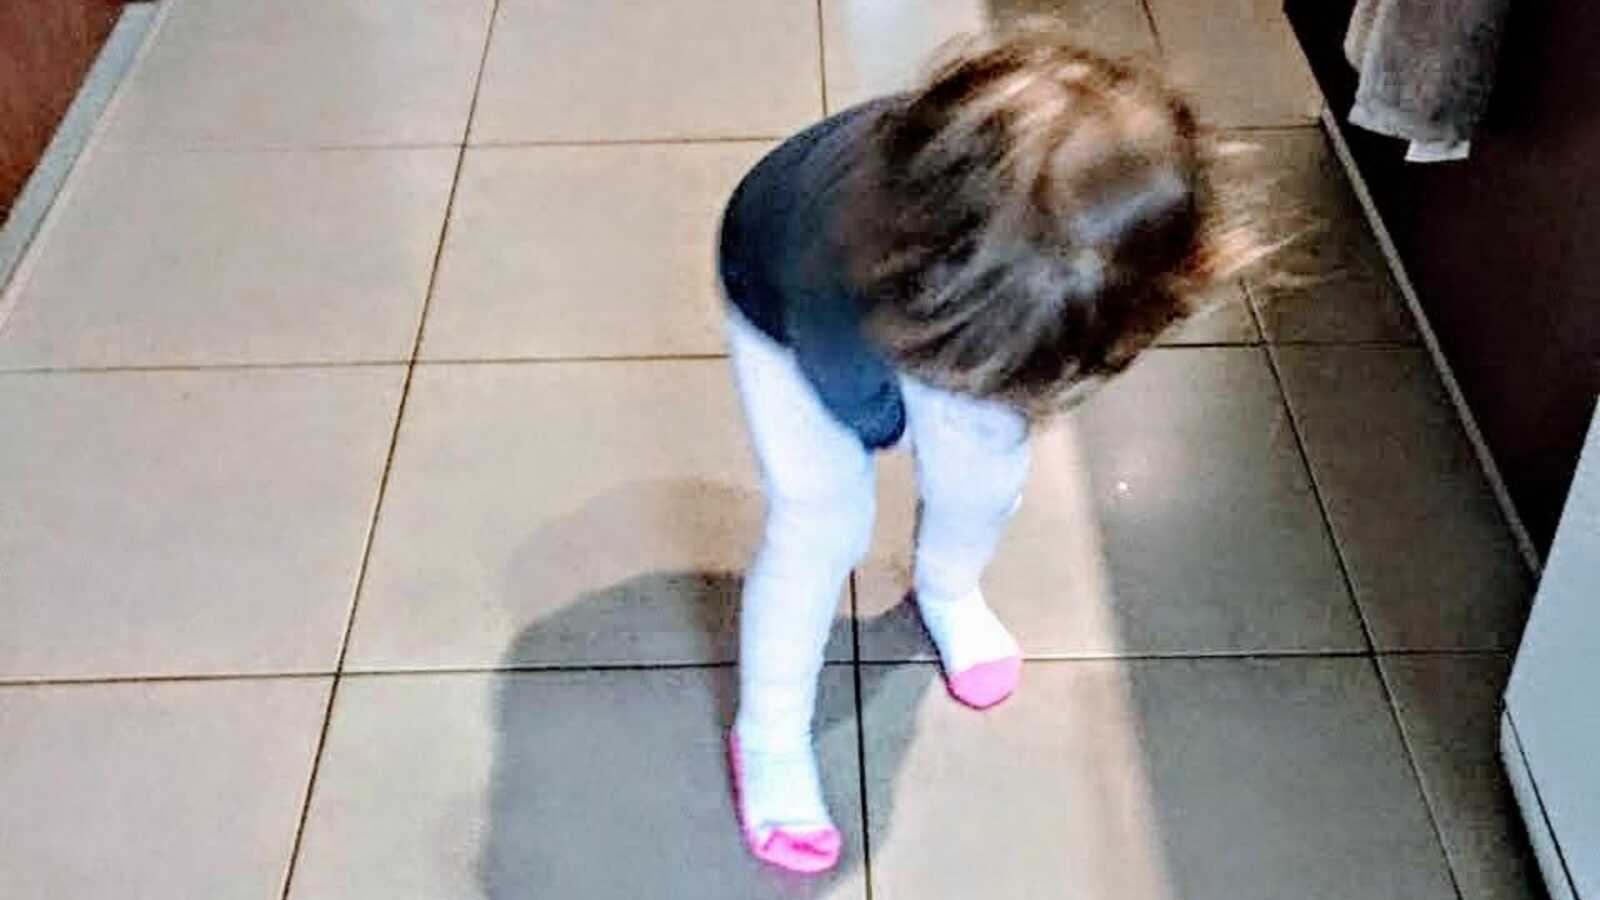 girl standing on tile floor